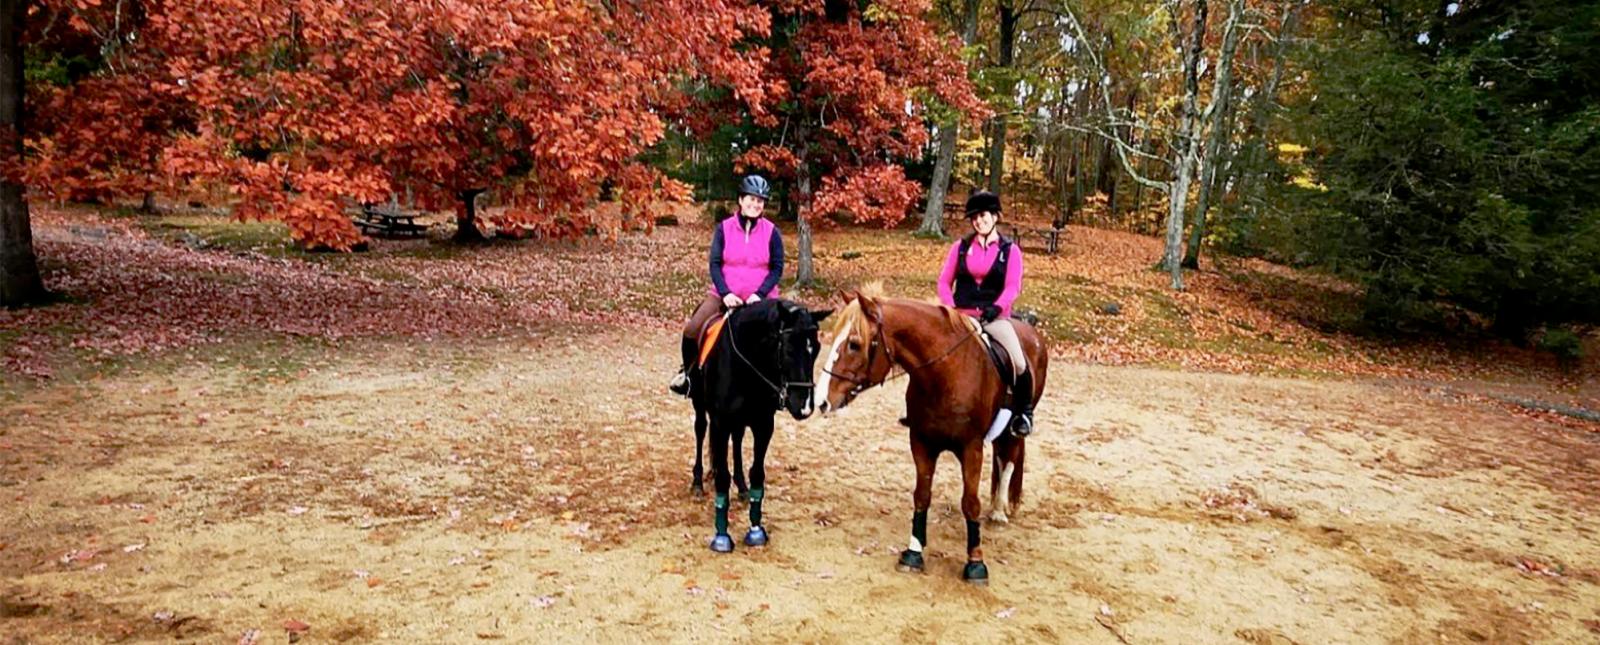 Dos mujeres montando a caballo en otoño (Instagram@daniellaa81)